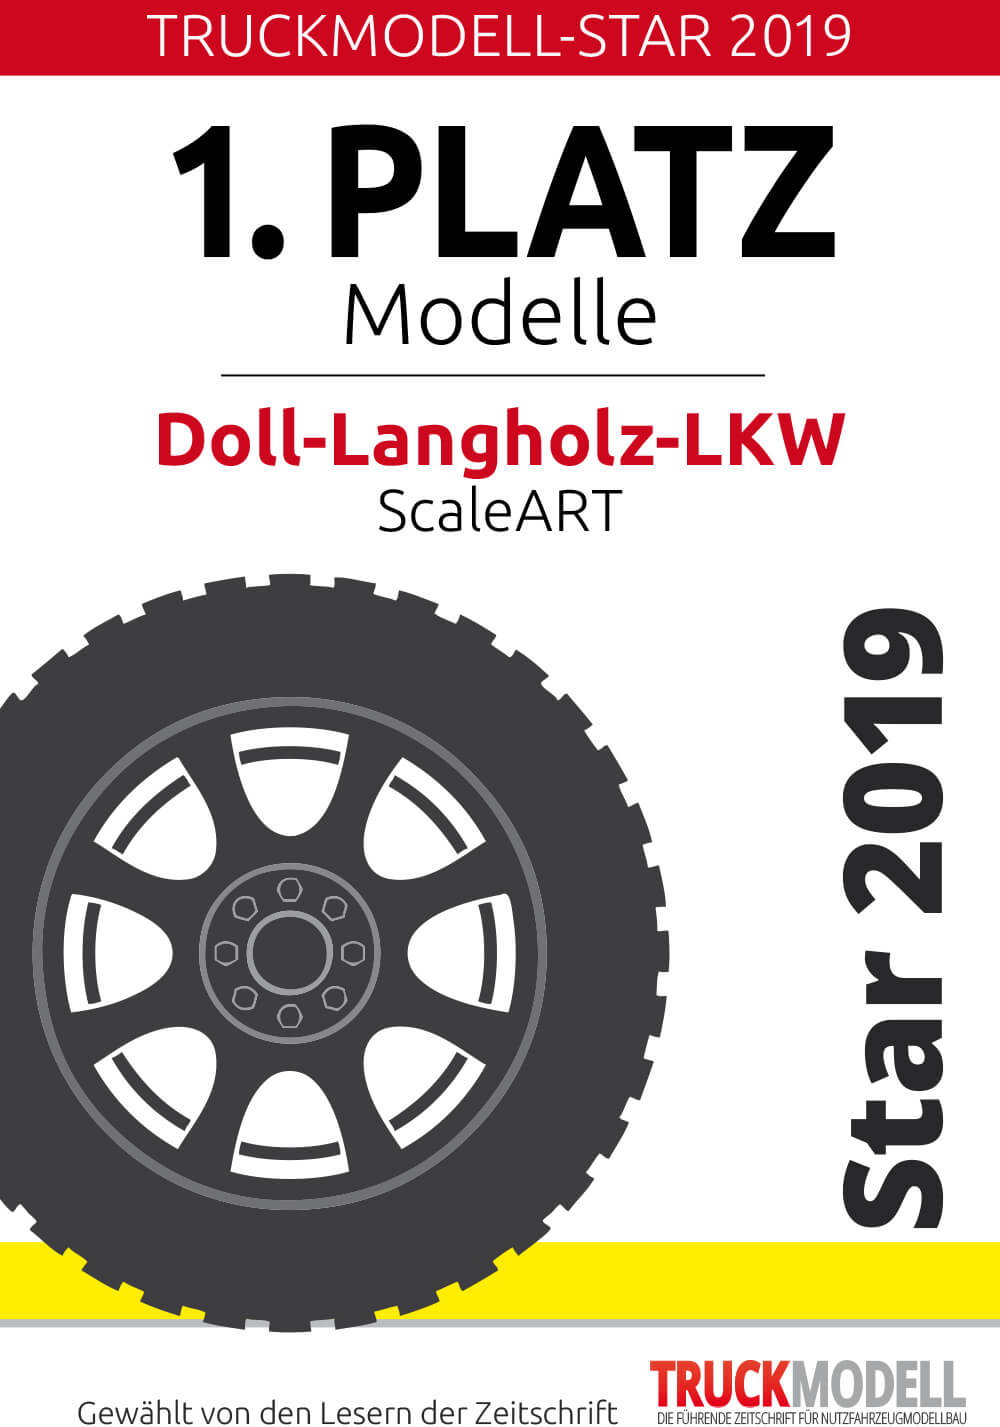 Award: TruckModell-Star 2019 - Doll-Langholz-LKW